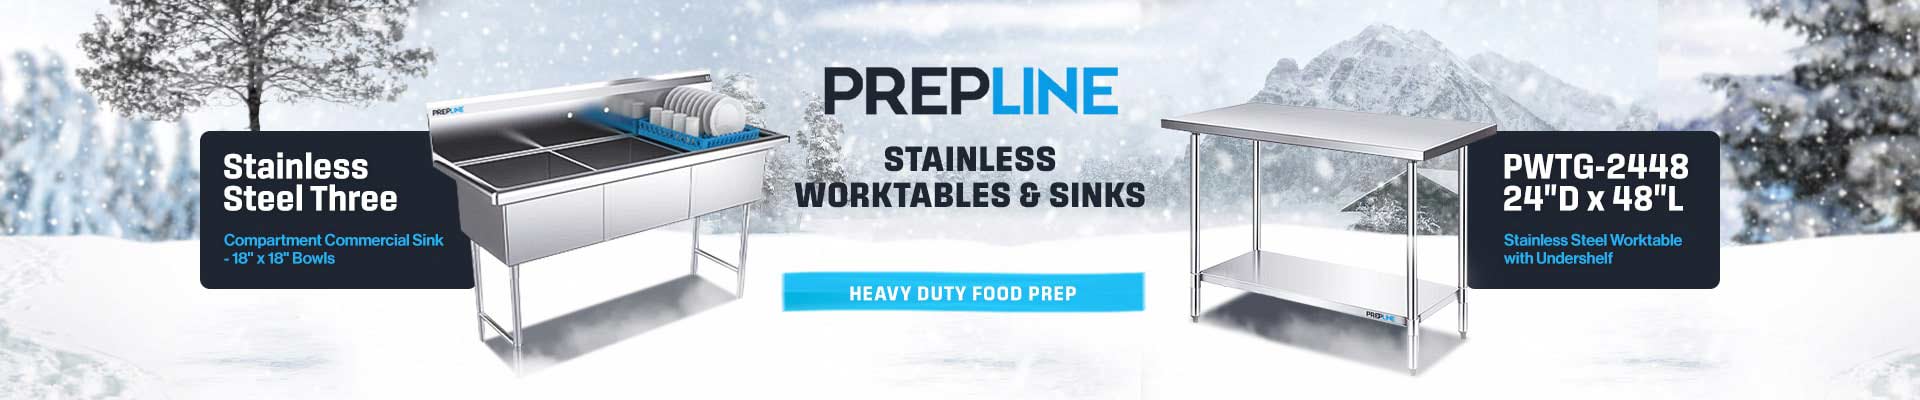 Prepline Stainless Steel Worktables and Sinks